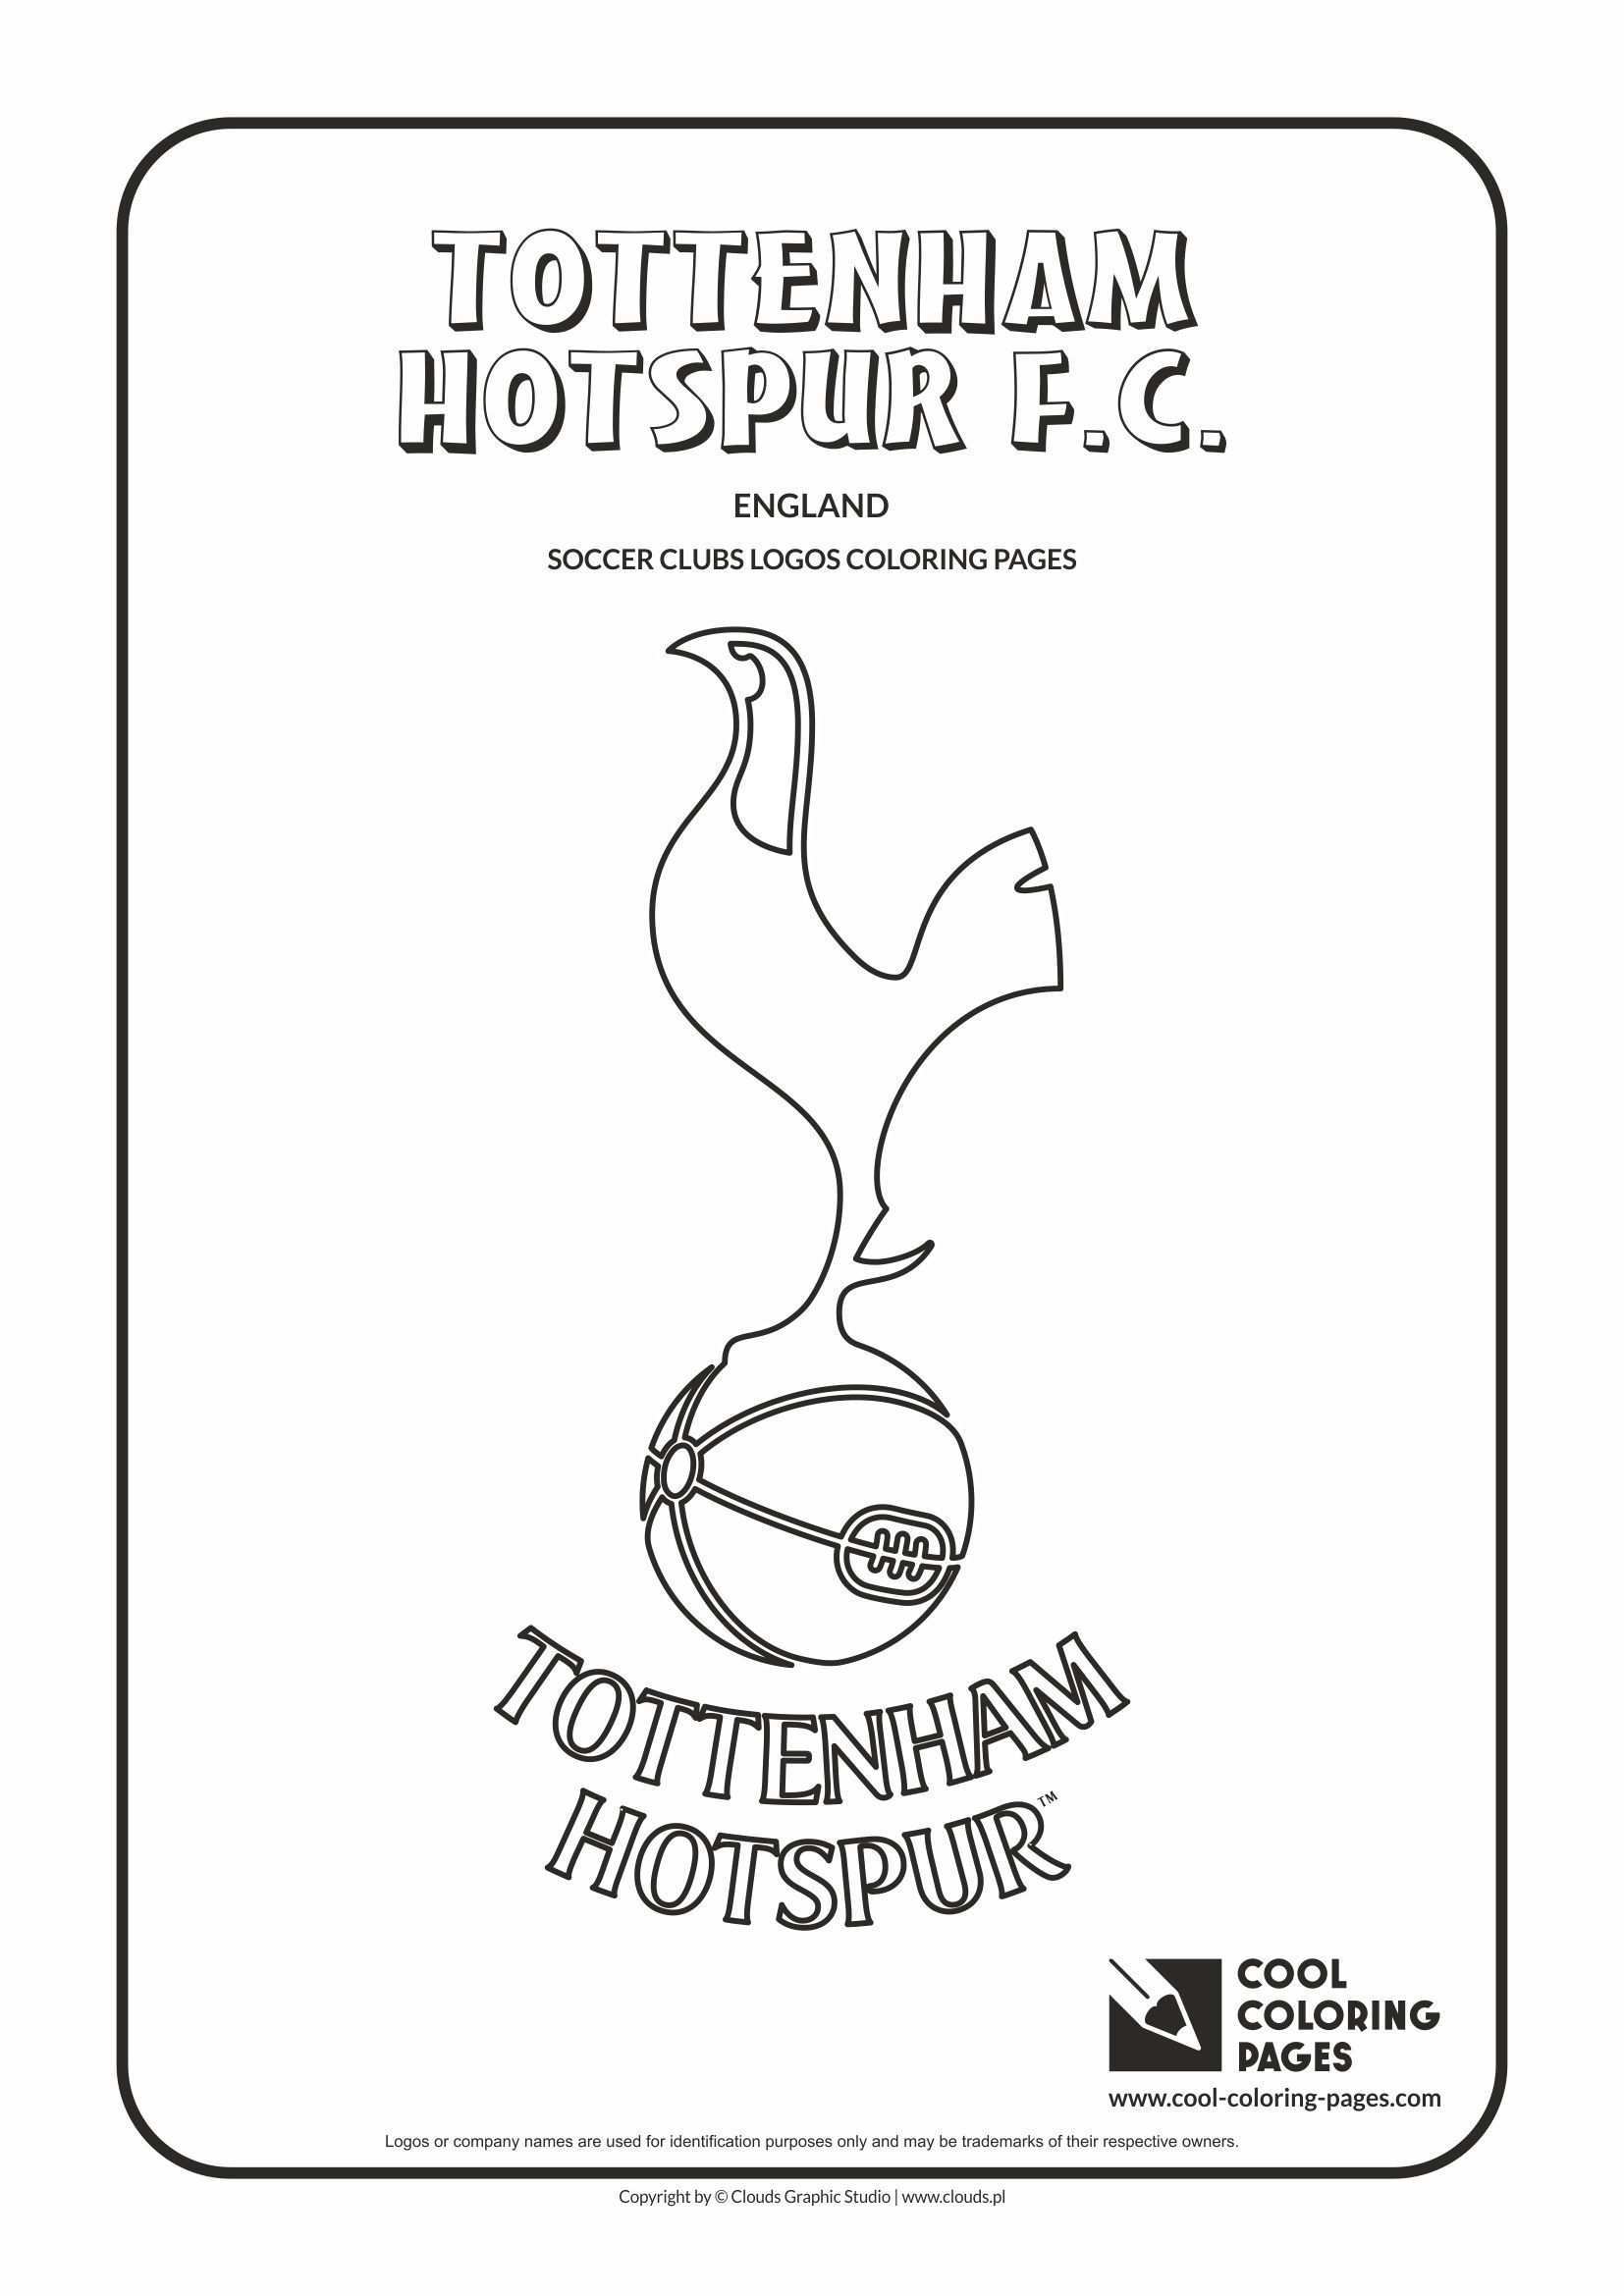 Tottenham Hotspur F C Logo Coloring Coloring Page With Tottenham Hotspur F C Cool Coloring Pages Name Coloring Pages Coloring Pages